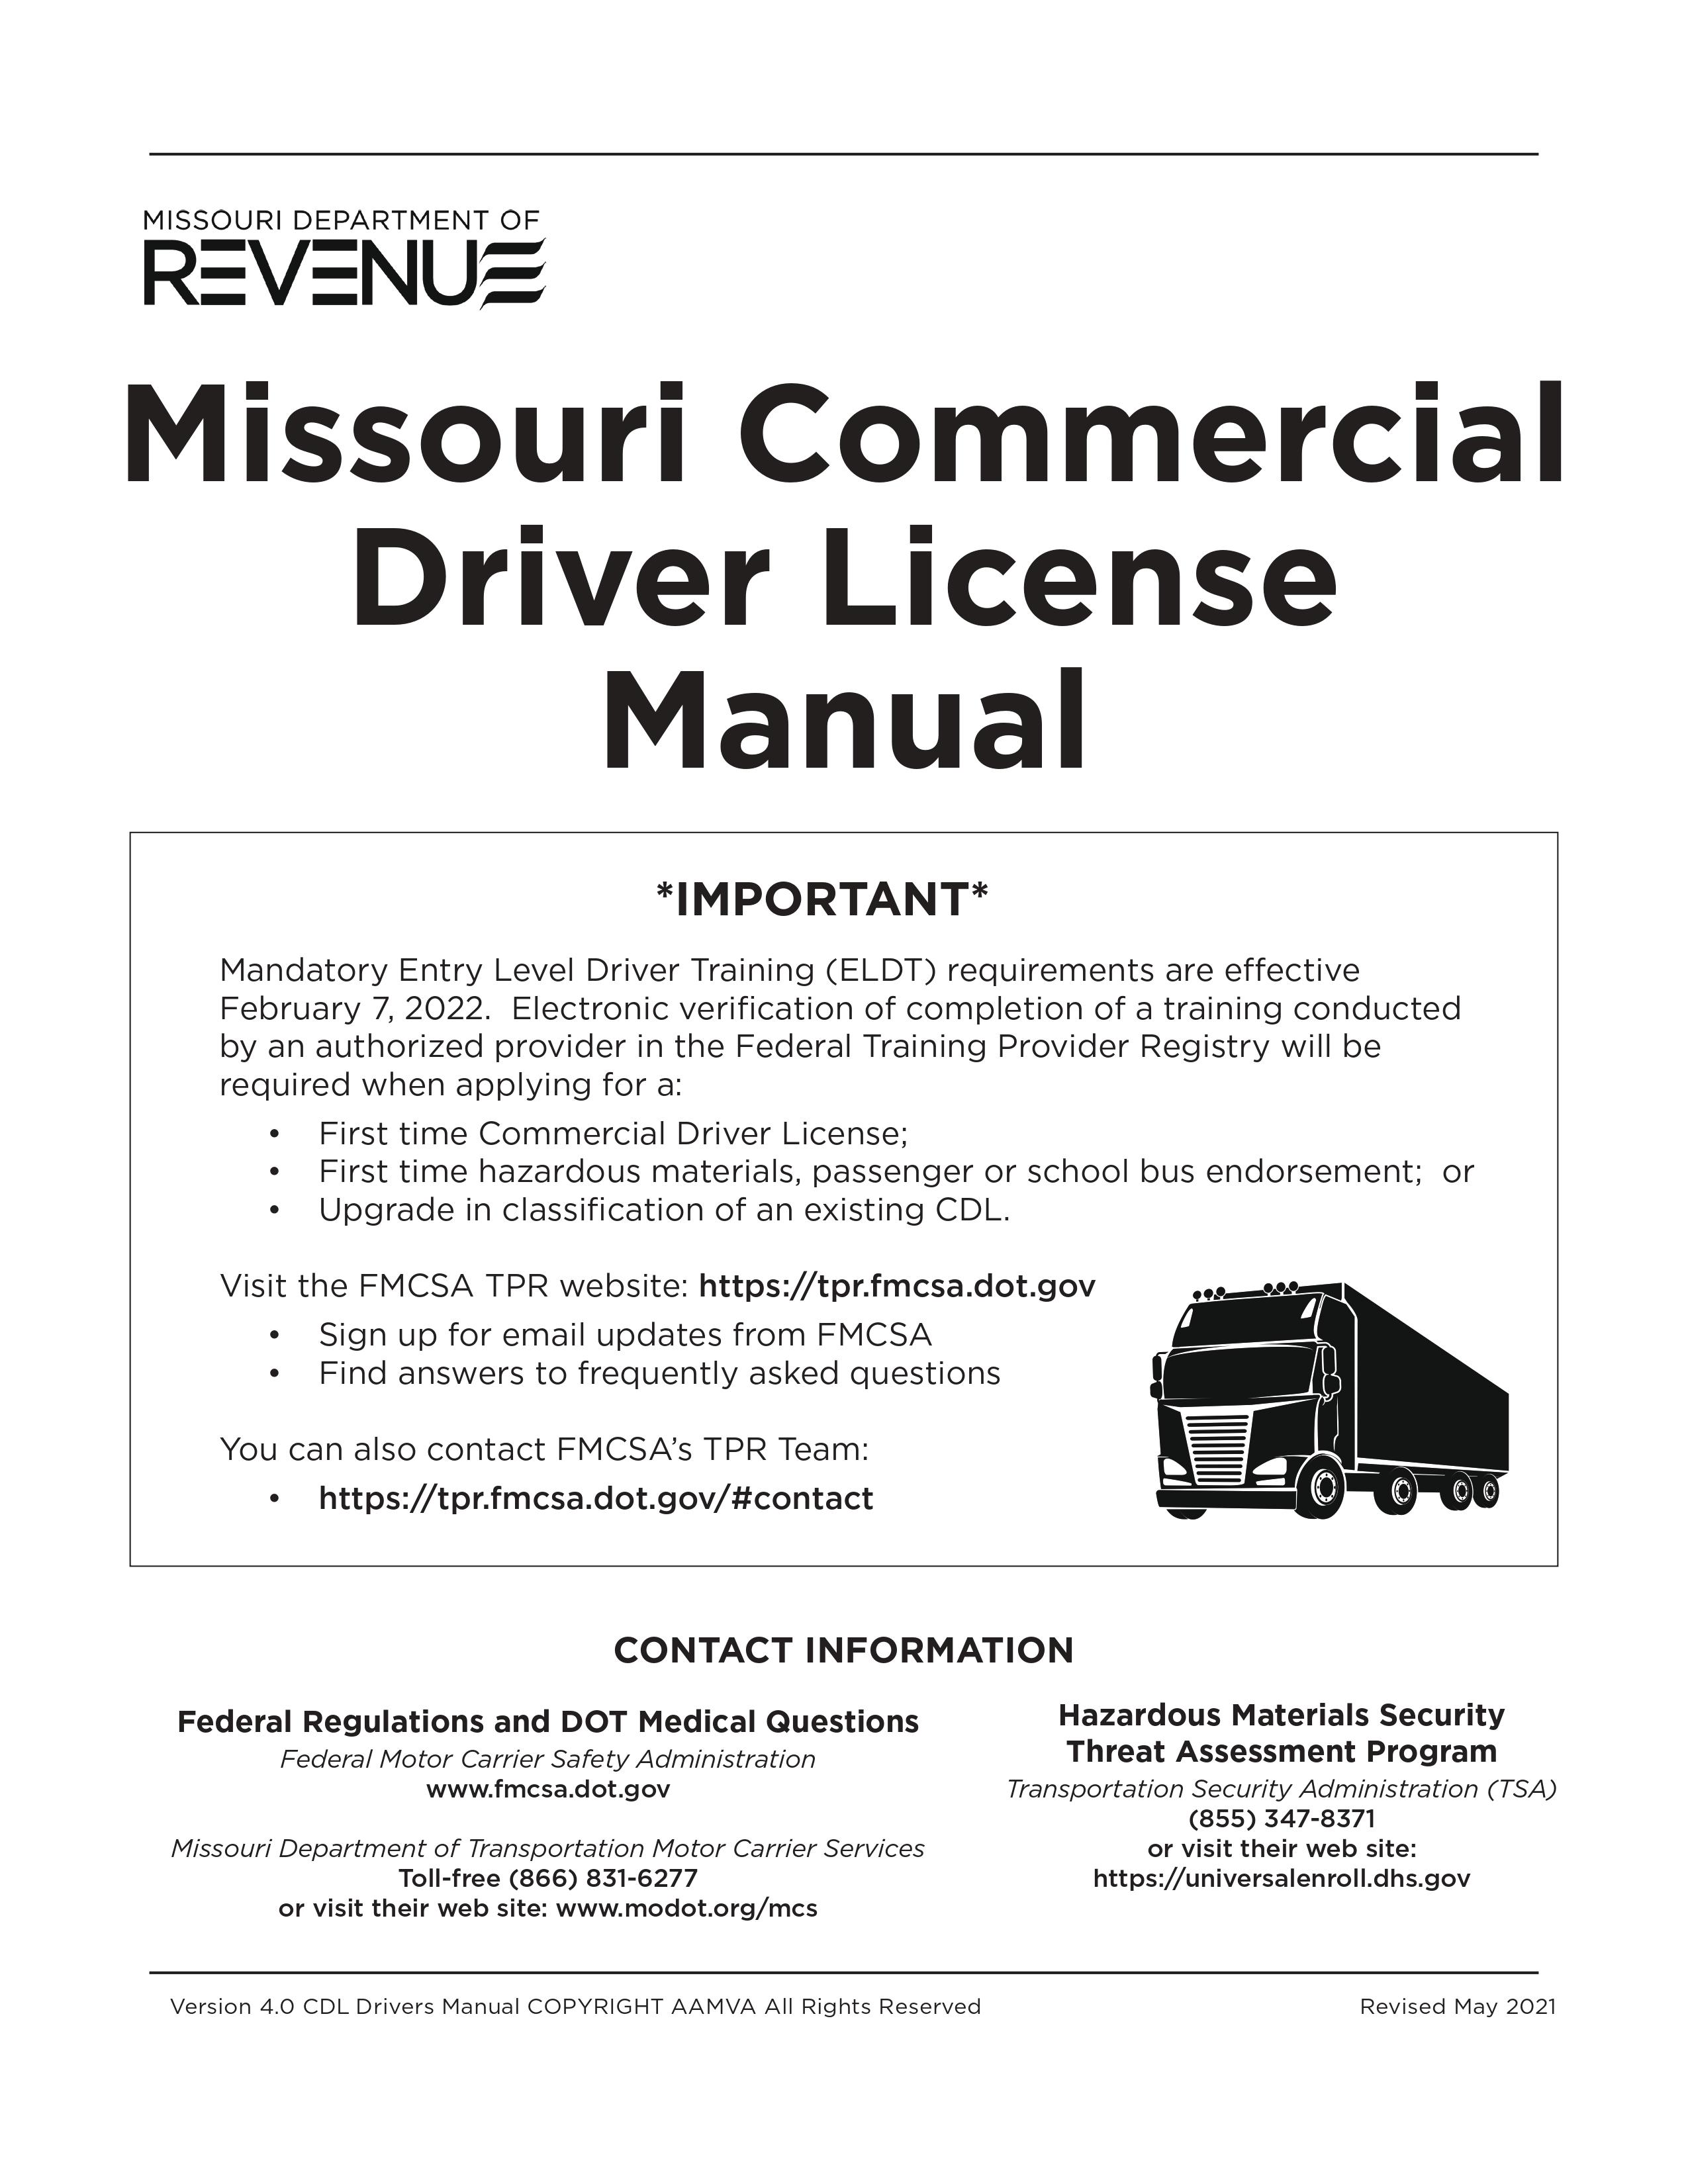 Missouri's CDL Manual